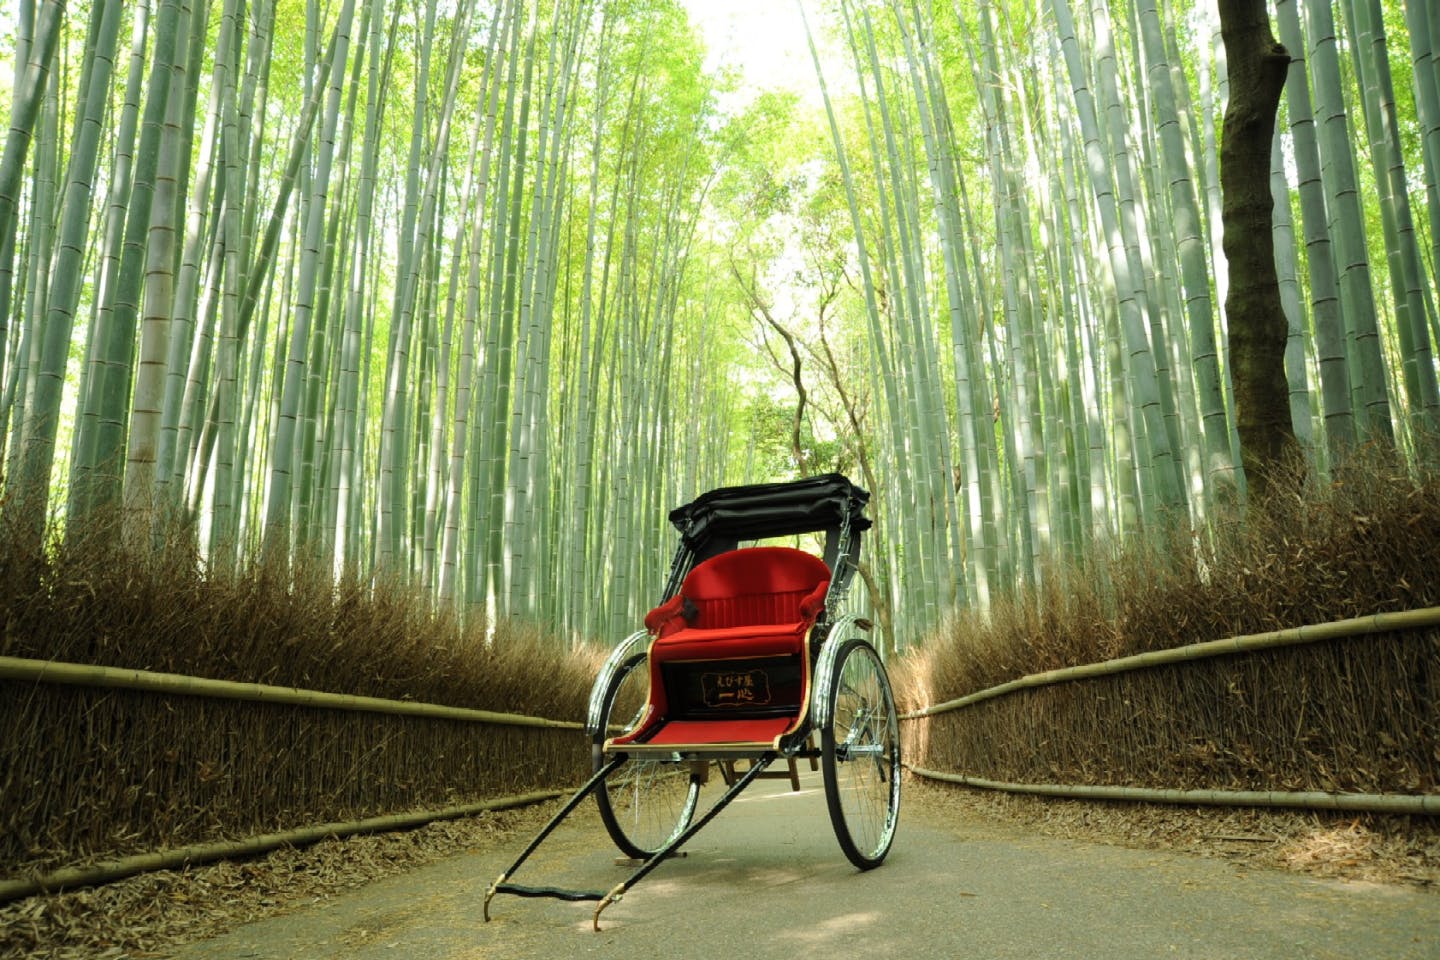 【京都・嵐山・人力車・30分貸切】人力車で風情を感じるひと時。いつもとは違った京都観光を